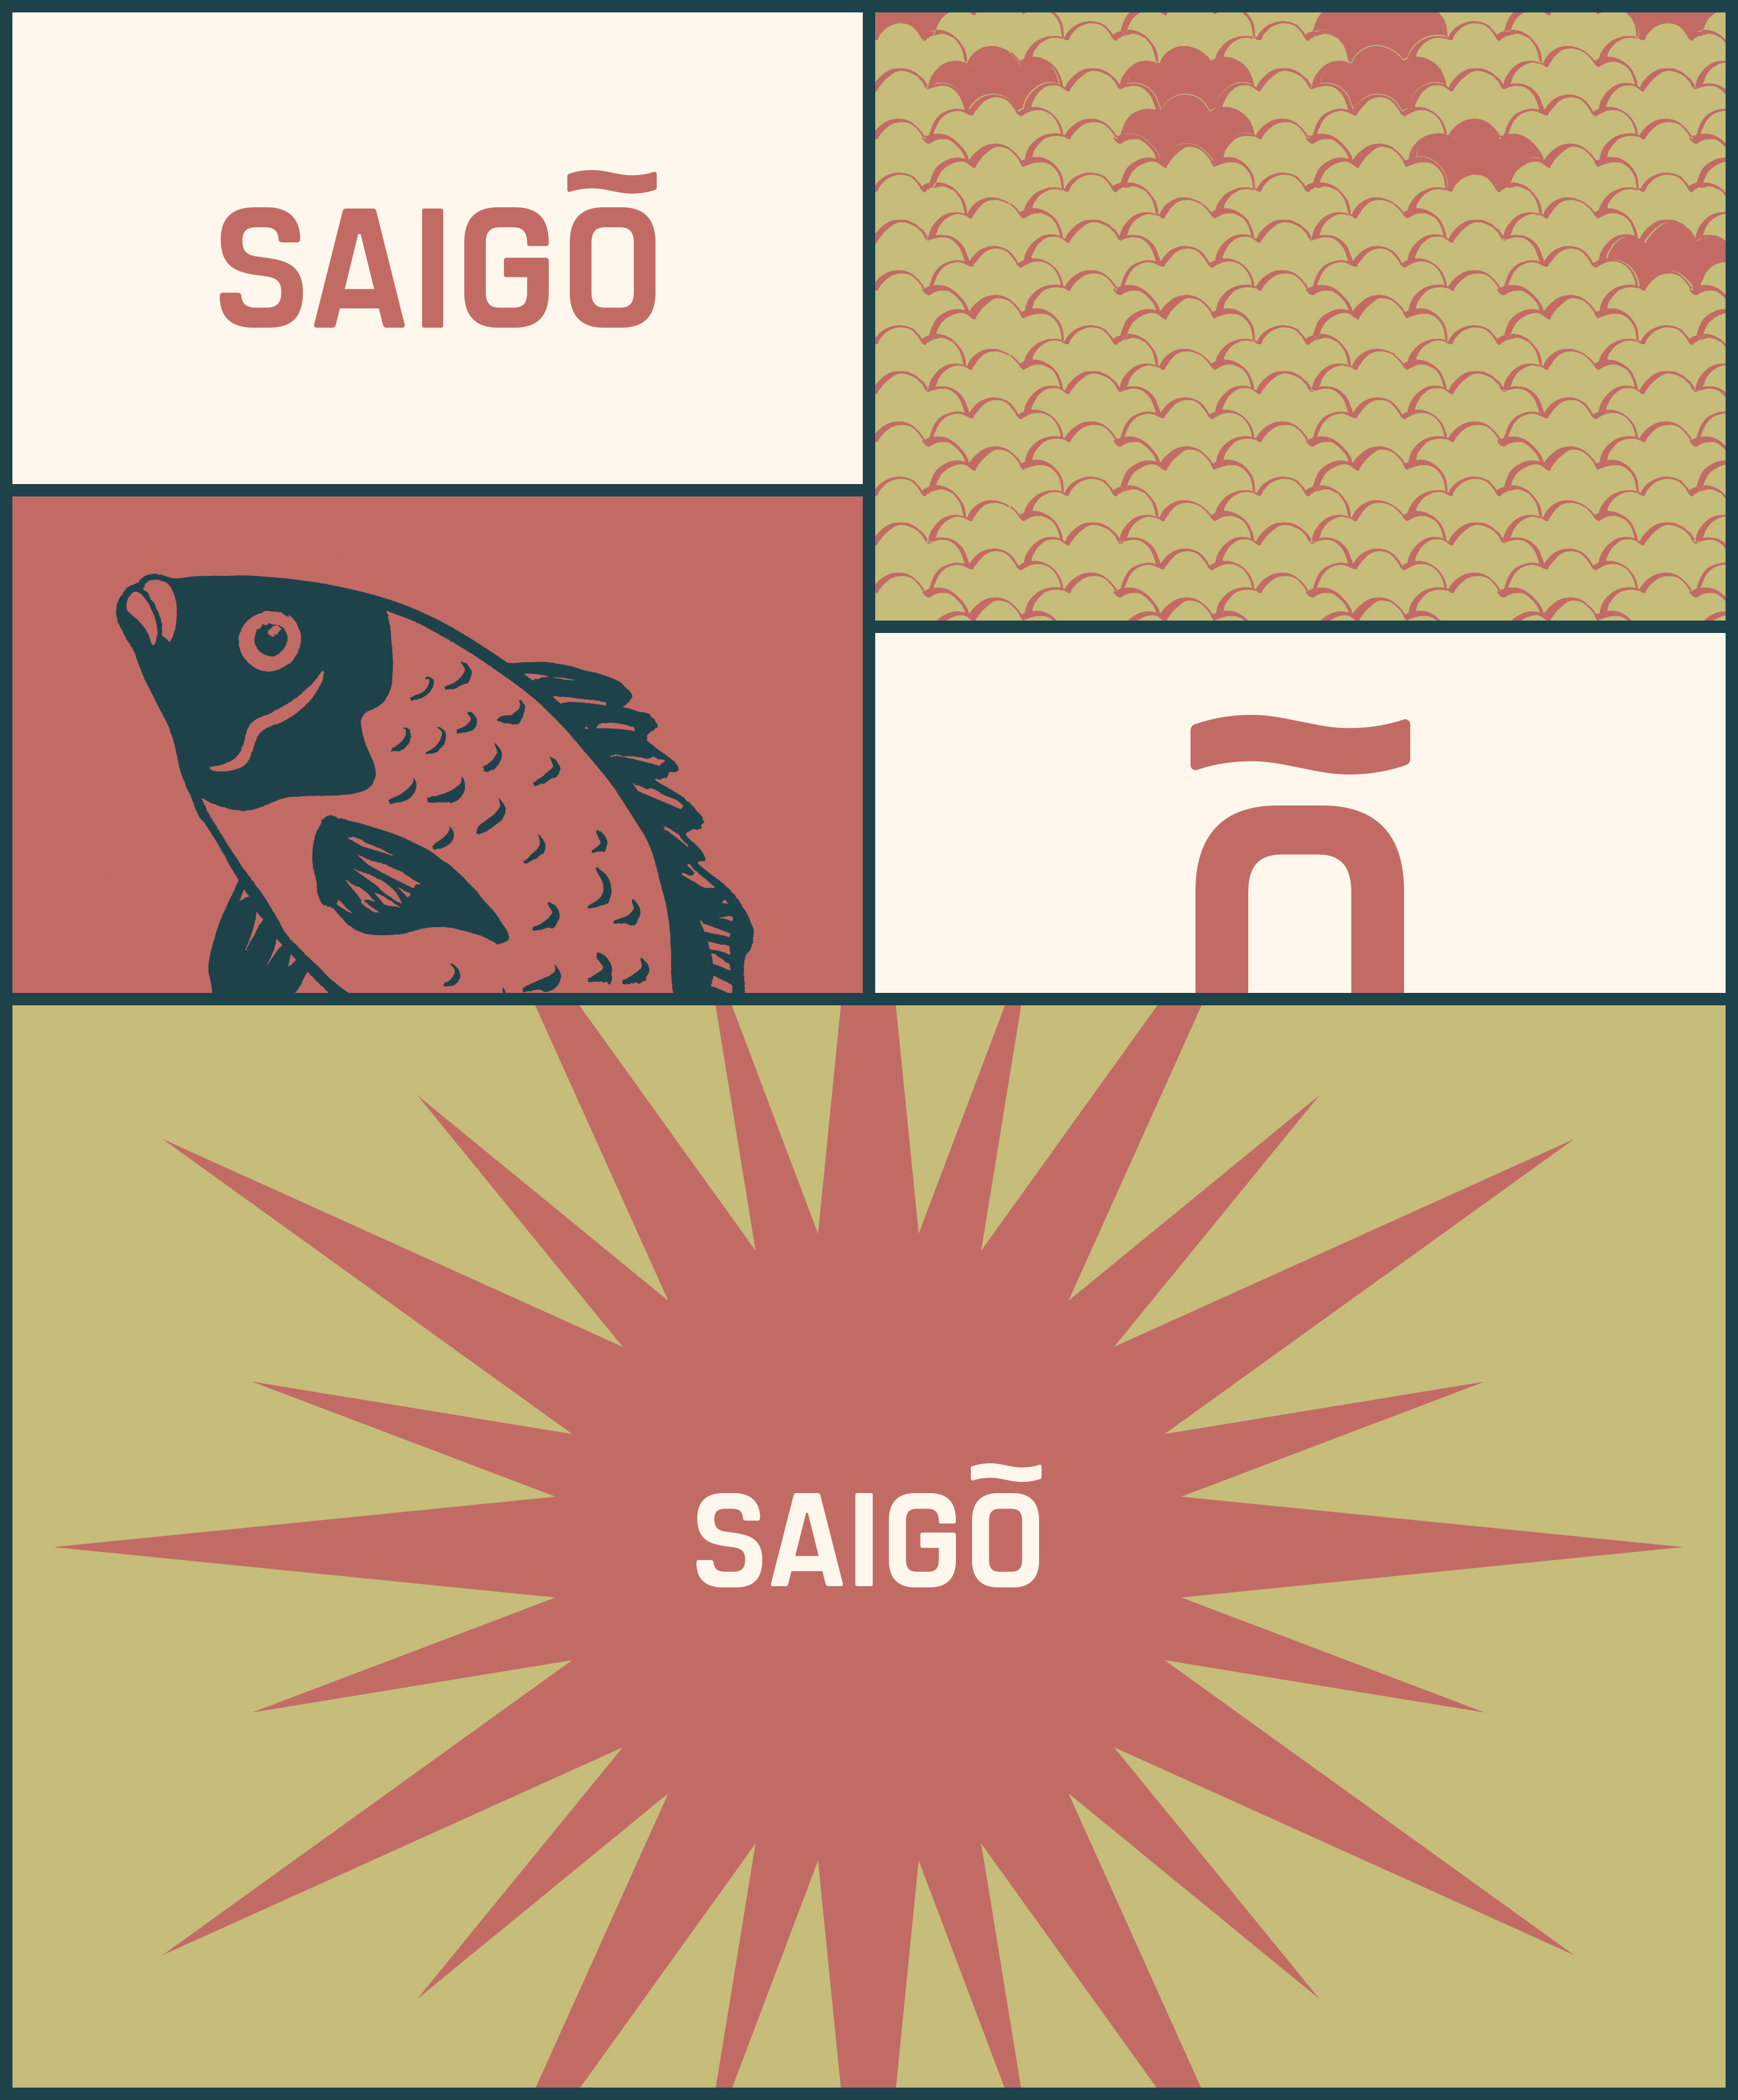 Лого & Айдентика для ресторана Saigo — Изображение №3 — Брендинг, Иллюстрация на Dprofile